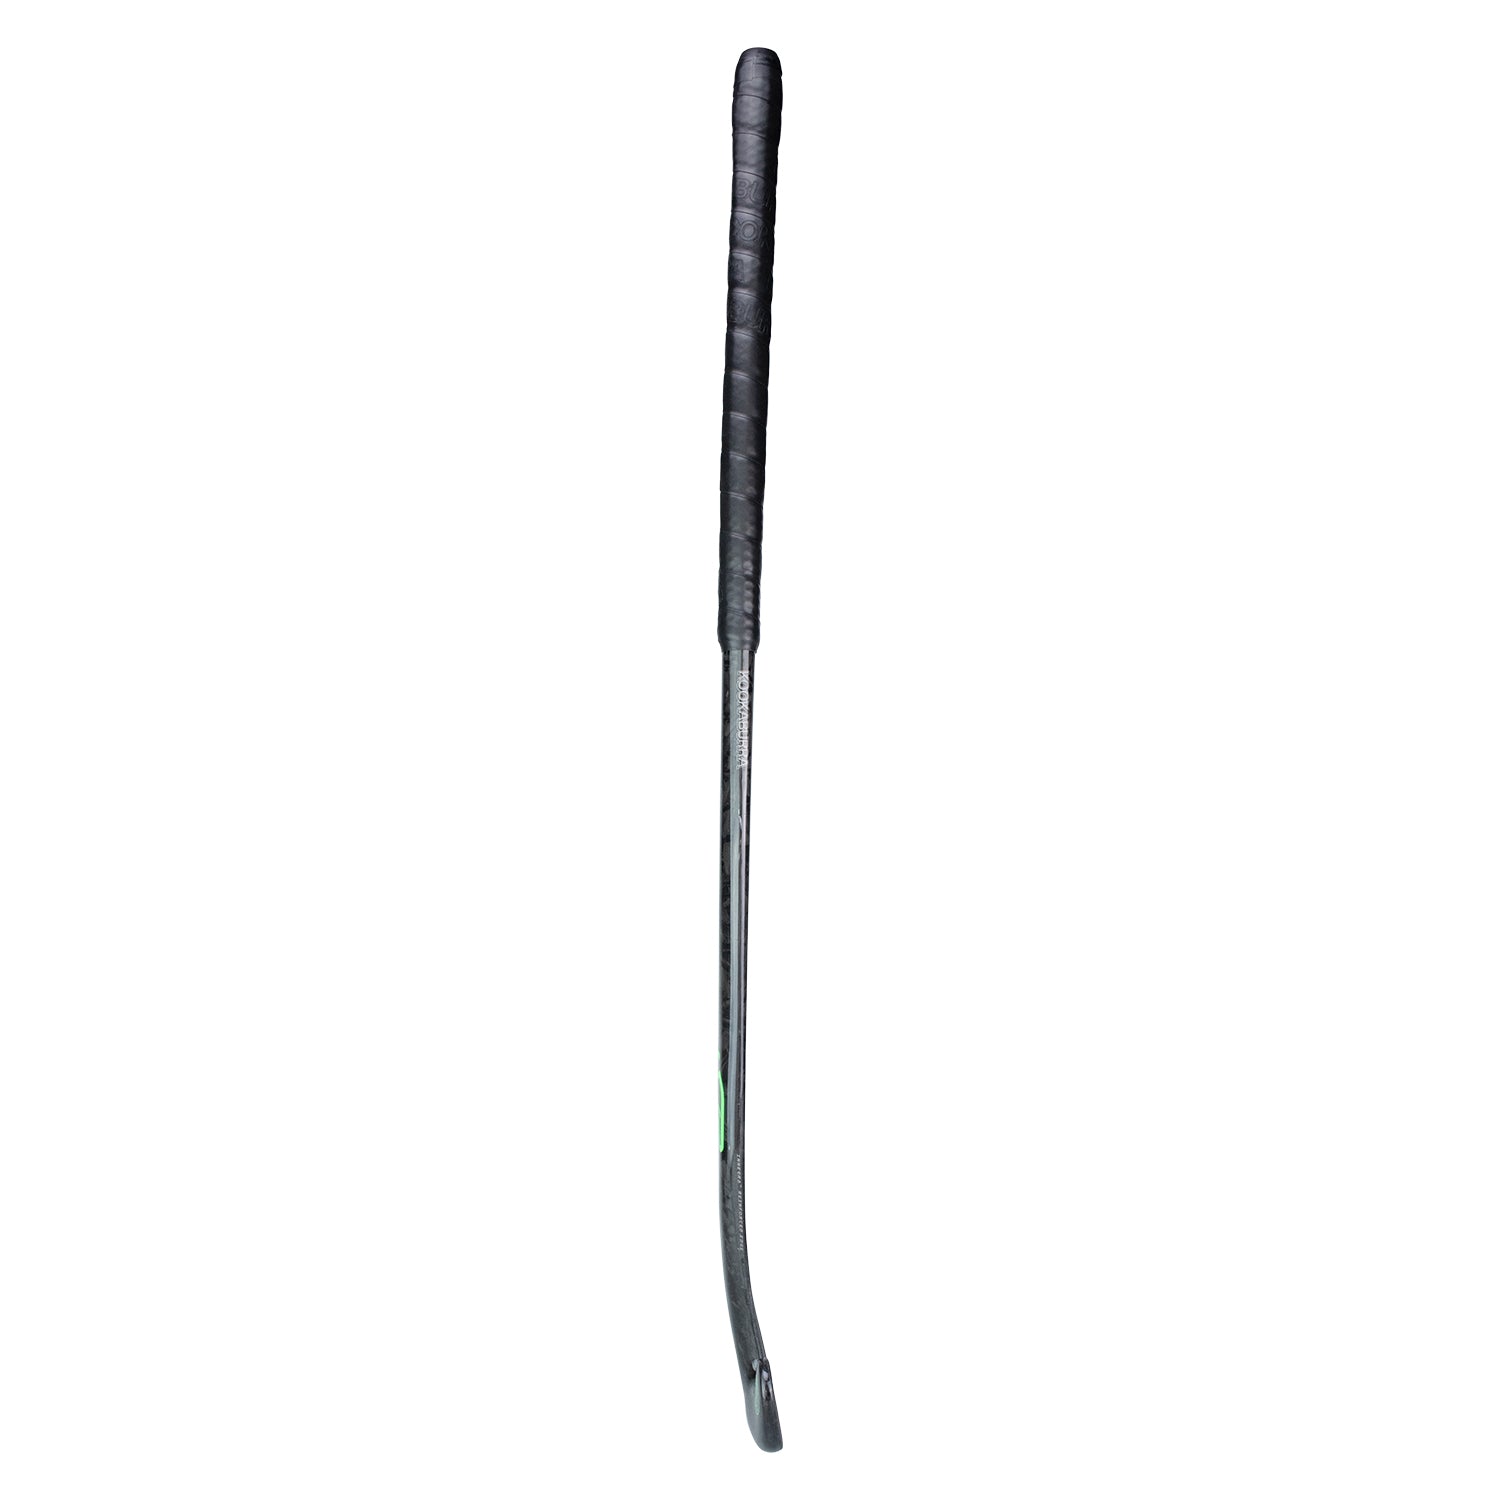 Kookaburra Pro X-23 M-Bow 36.5 Light Hockey Stick